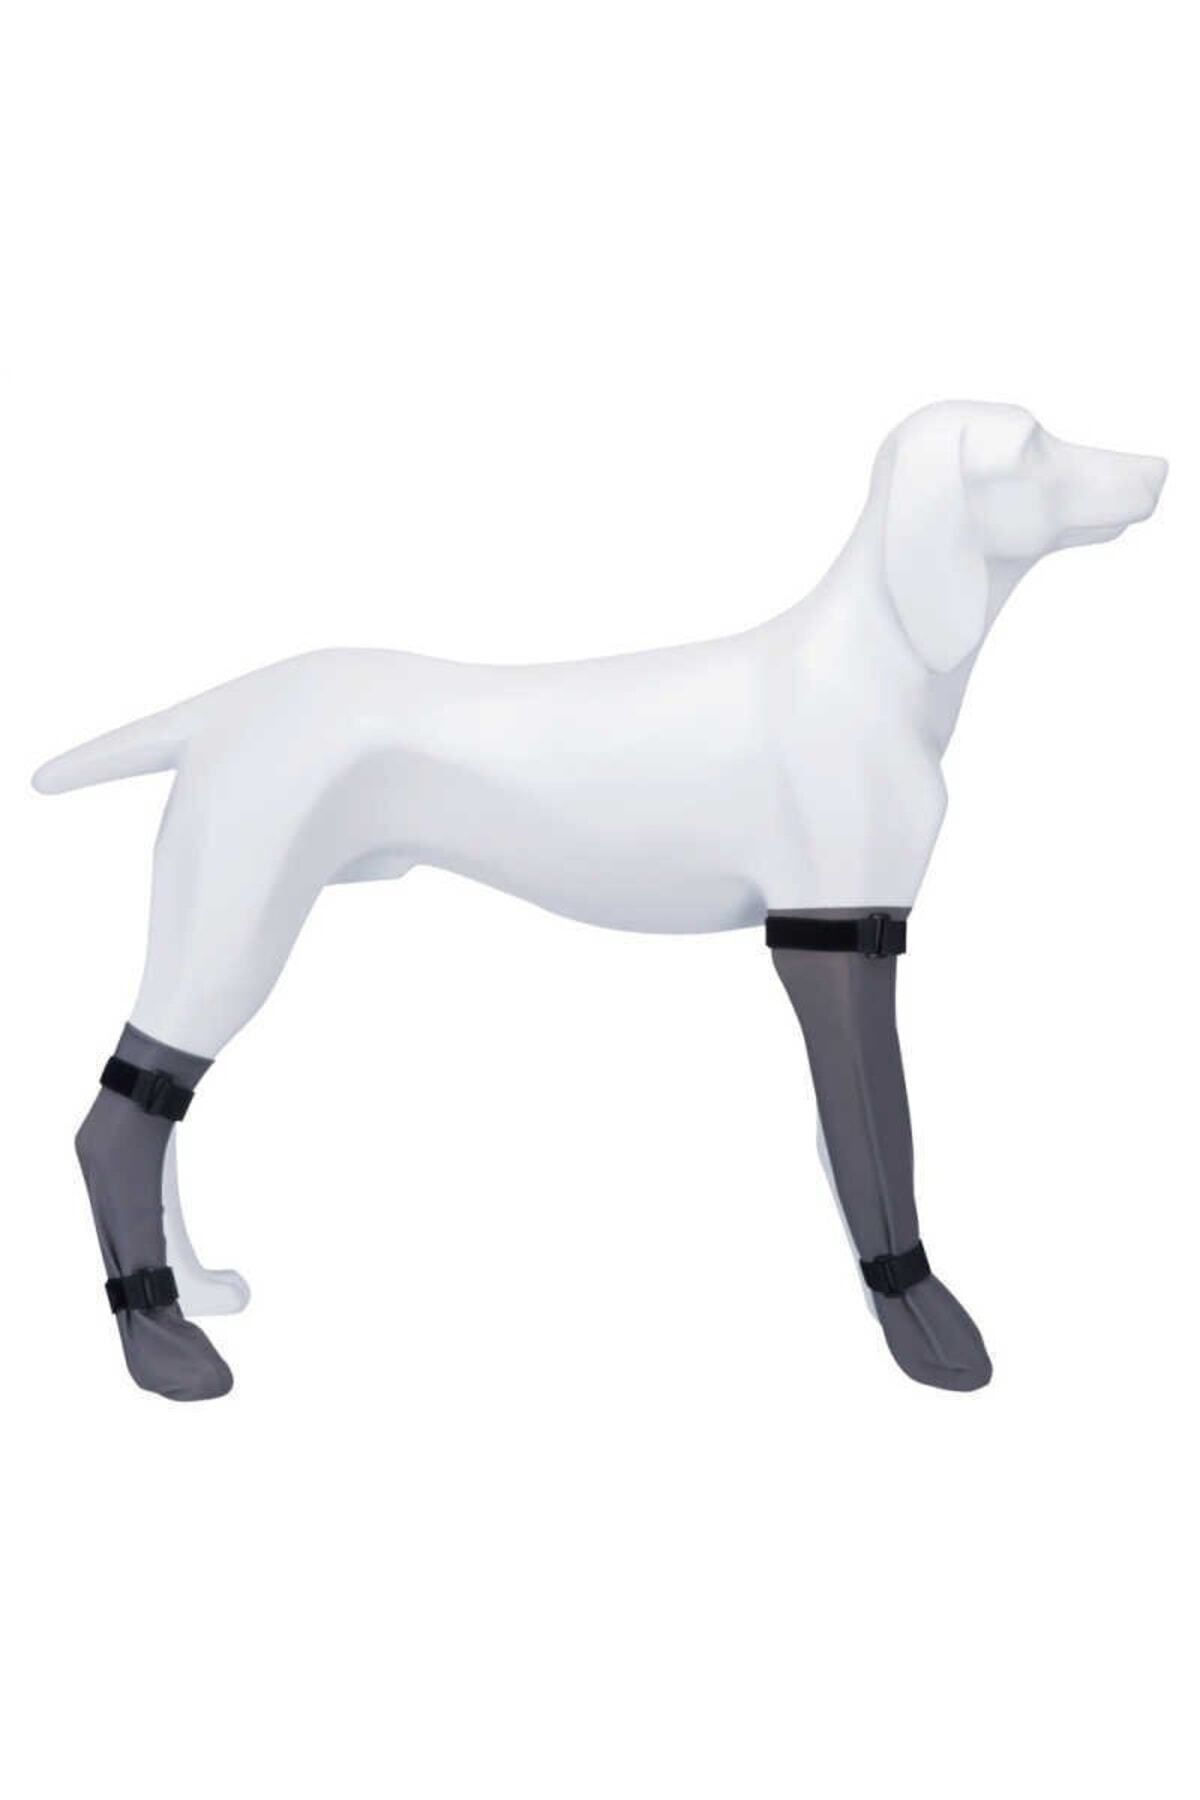 Trixie Gri Köpek Çorabı Su Geçirmez 1 Adet S:6cm/30cm